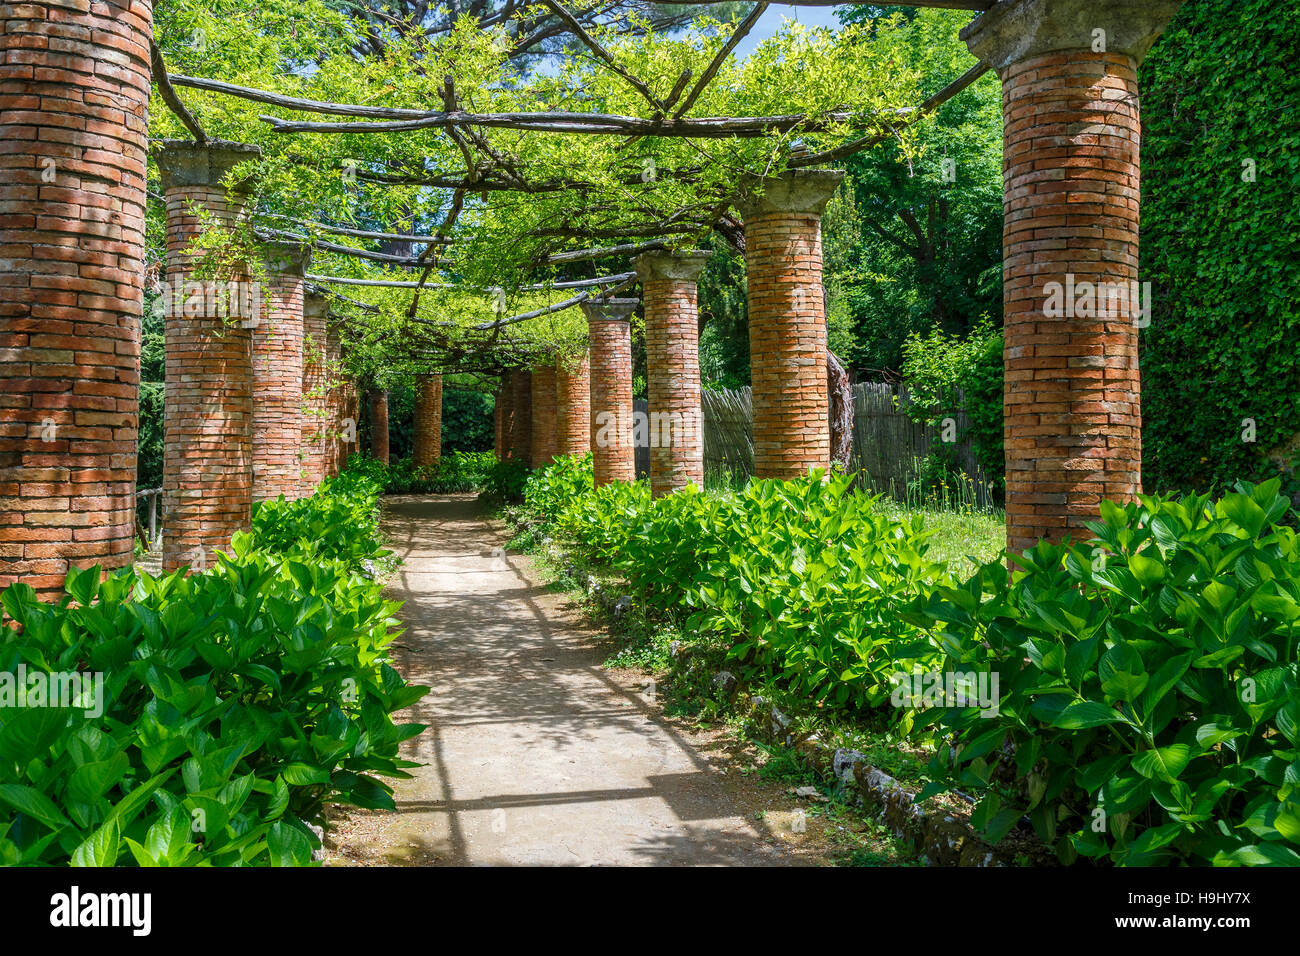 The 11thC Villa Cimbrone garden in Ravello, Southern Italy. Stock Photo